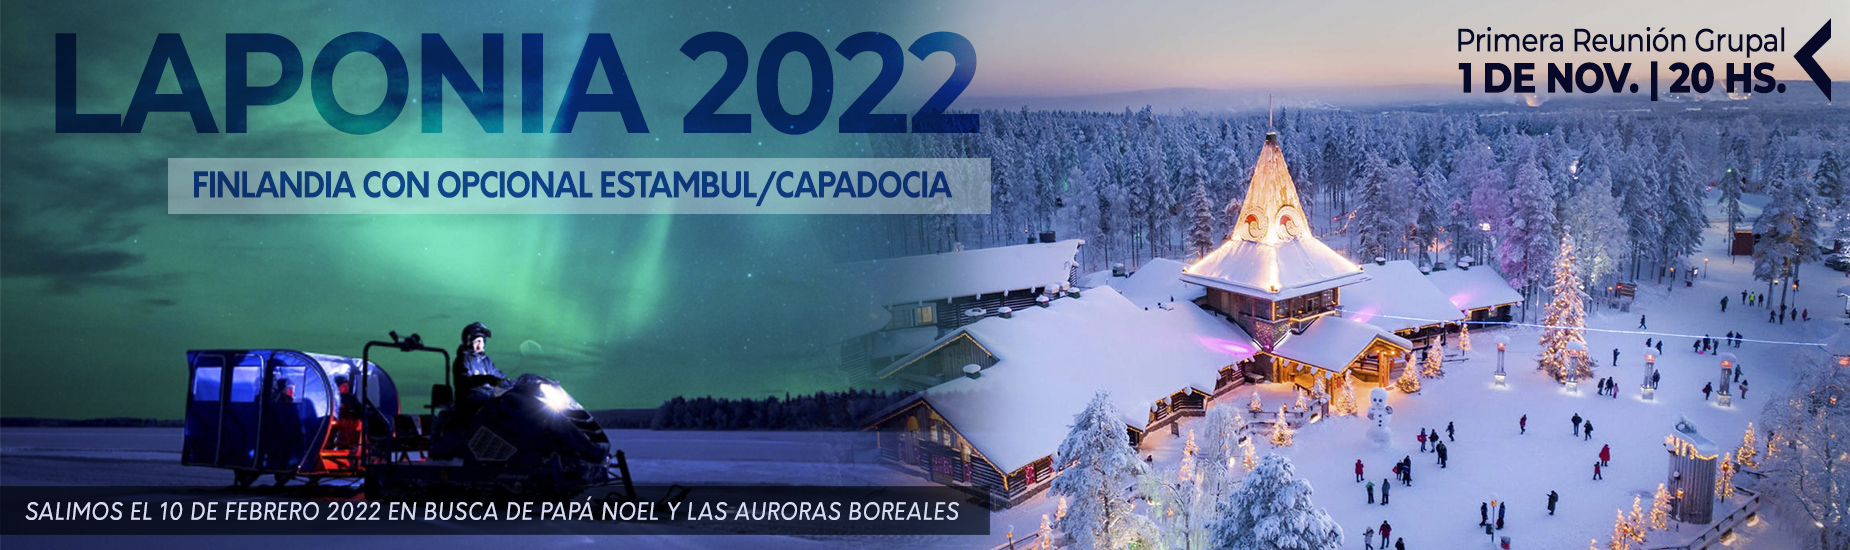 Laponia 2022